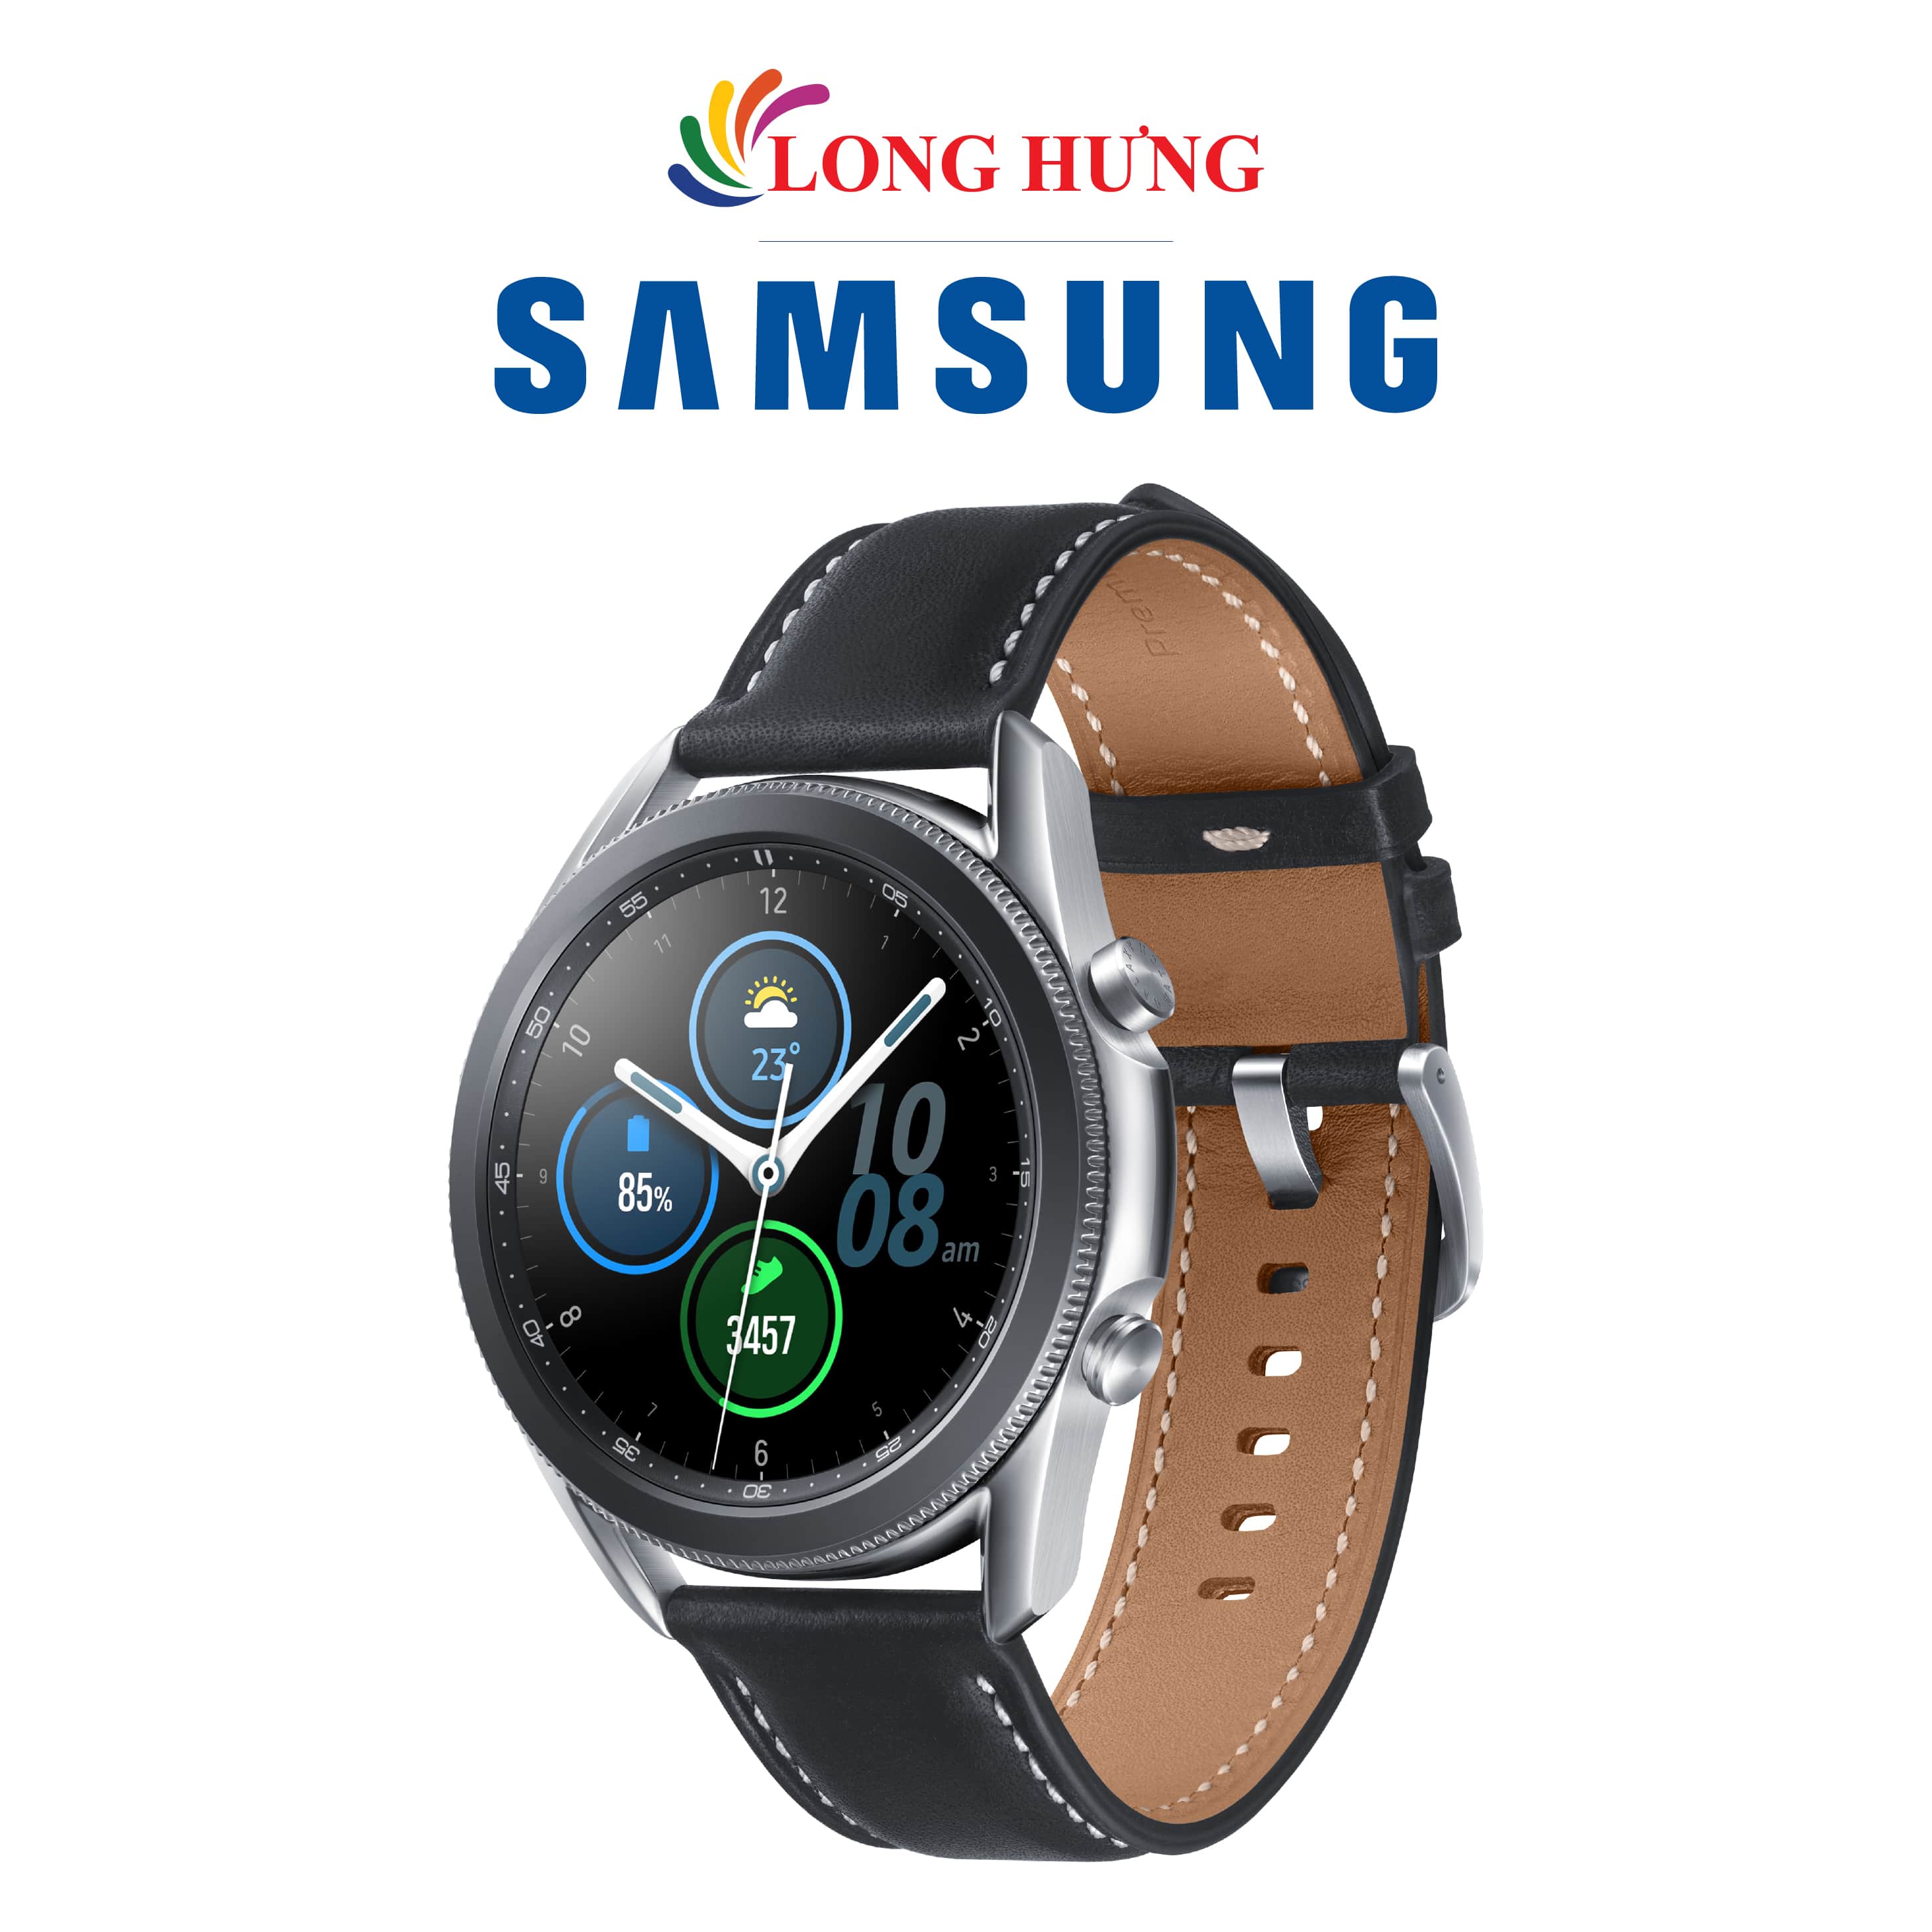 Đồng hồ thông minh Samsung Galaxy Watch 3 viền thép dây da - Hàng Chính Hãng - Đa dạng màu sắc lựa chọn Màn hình Super AMOLED sắc nét Cường lực Gorilla Glass Dx+ chống trầy cực tốt